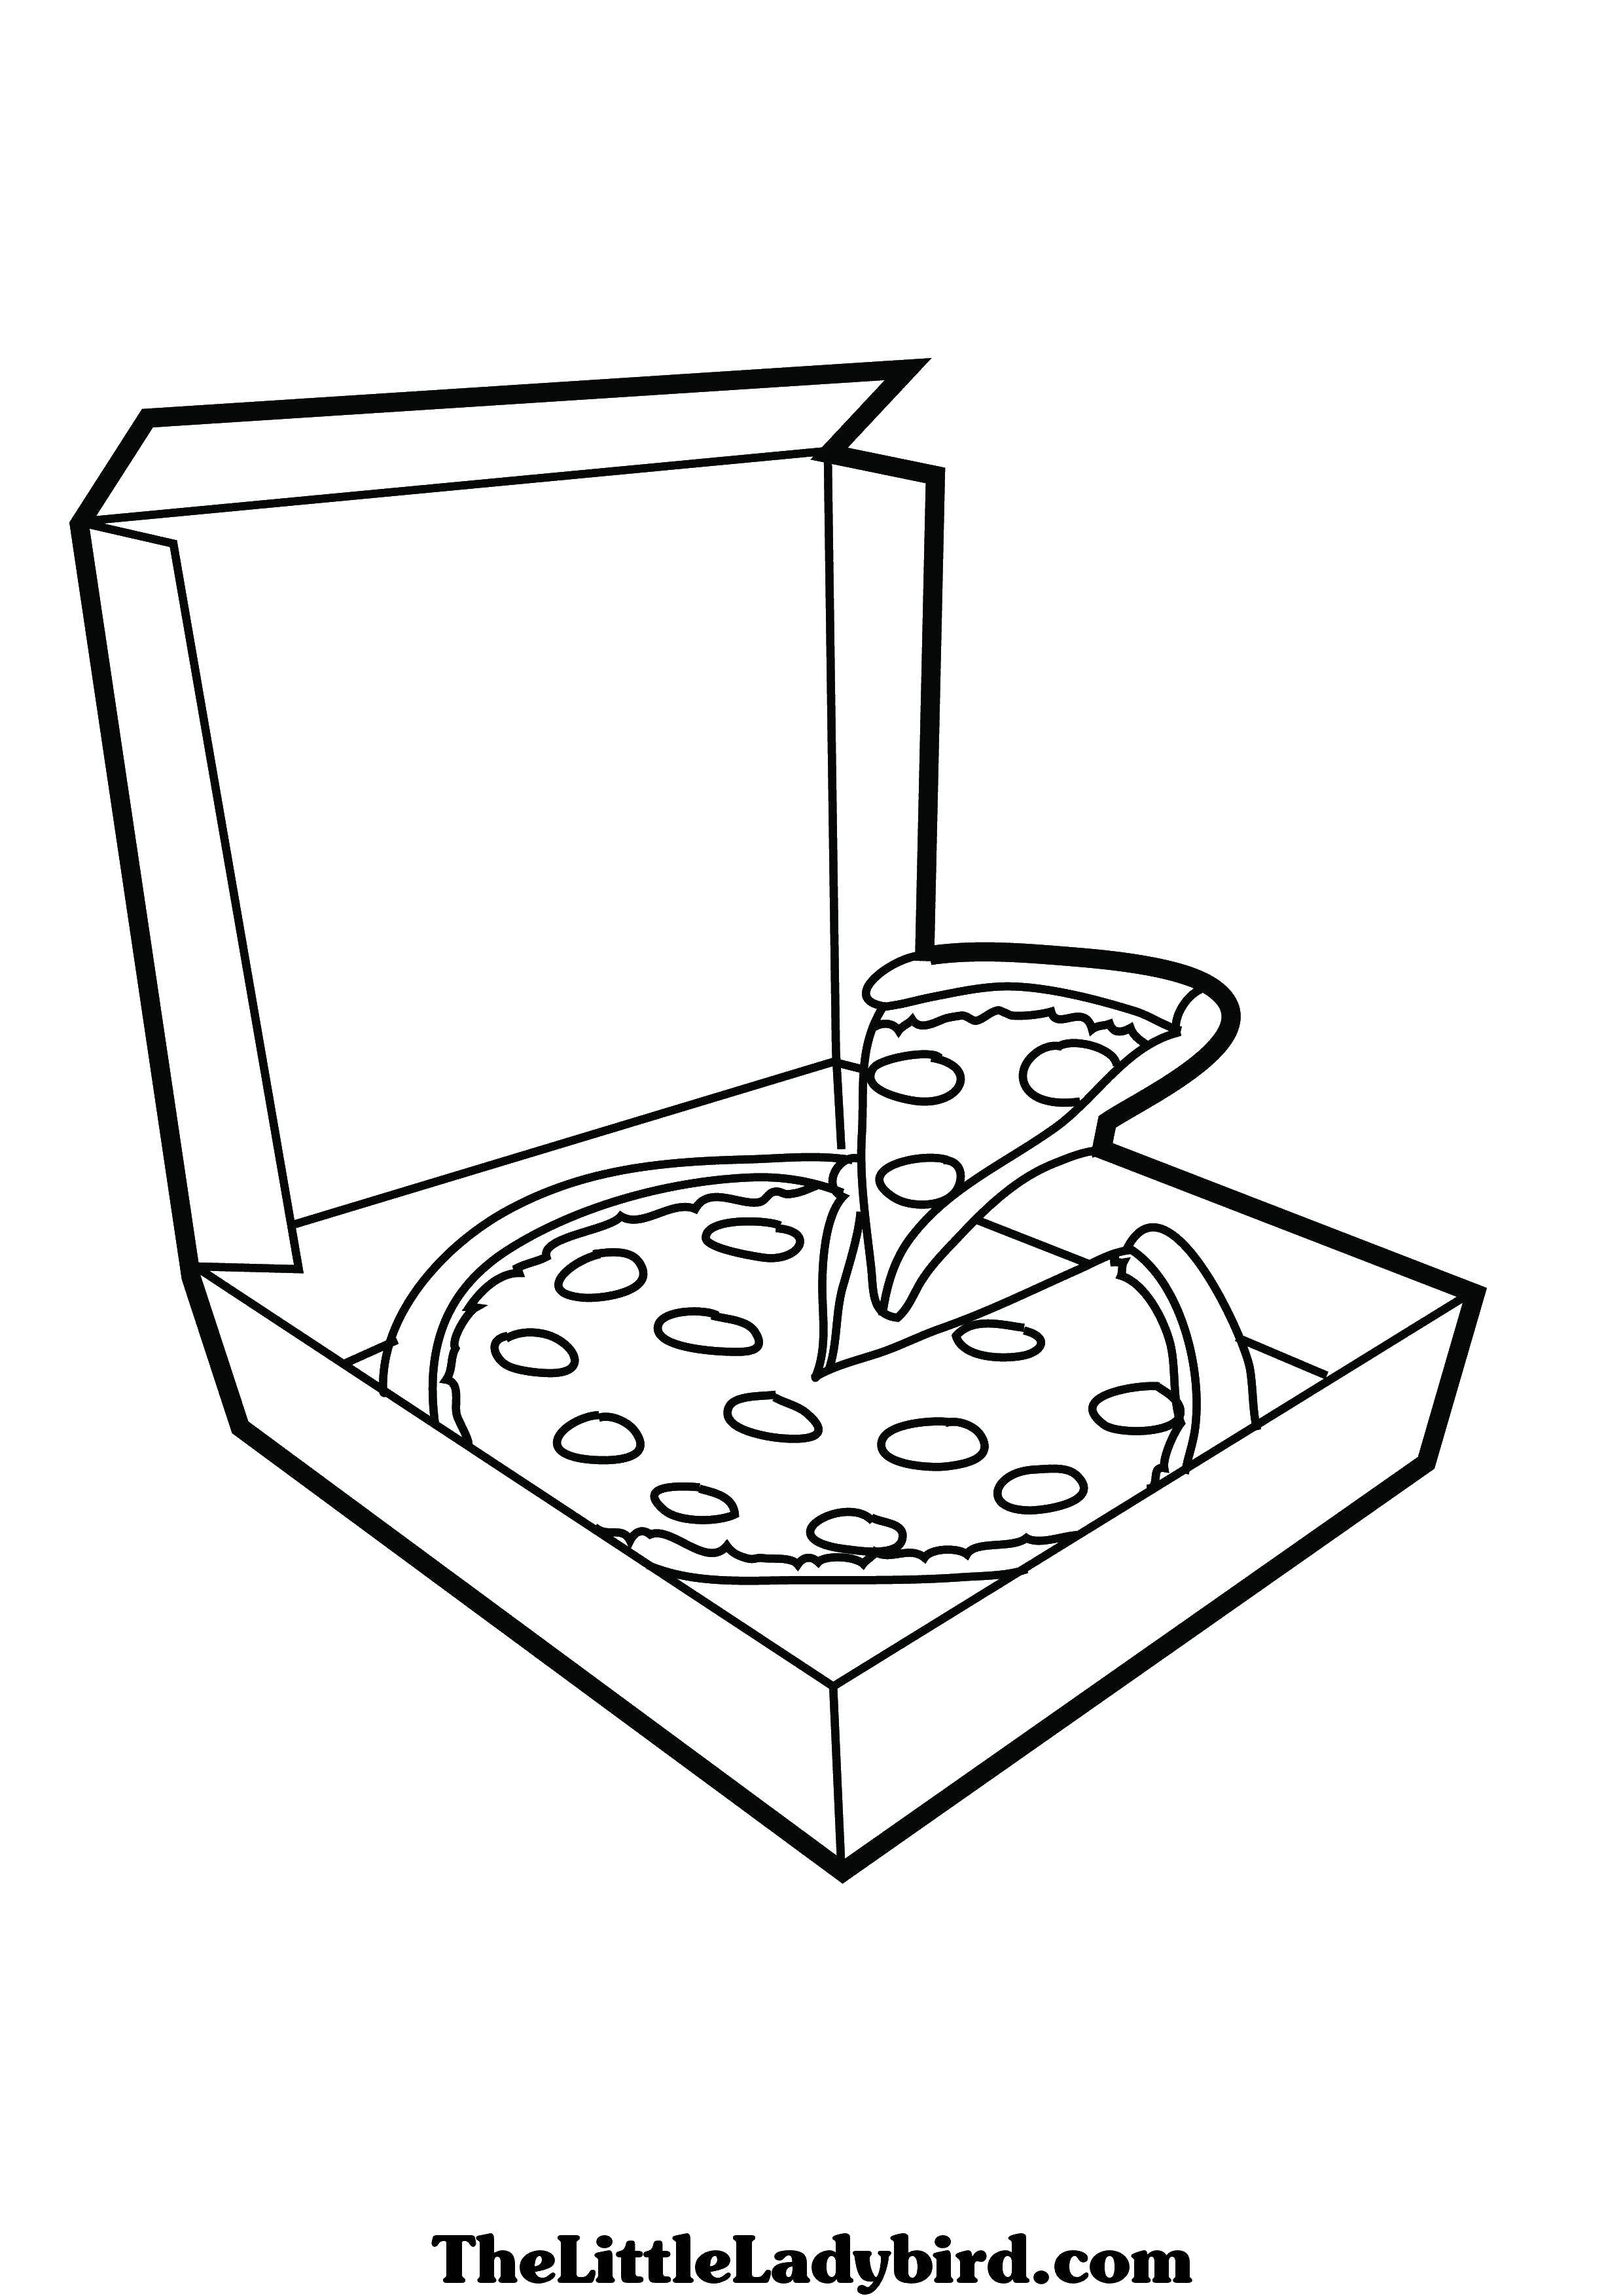 Название: Раскраска Пицца в коробке. Категория: Еда. Теги: пицца, коробка.